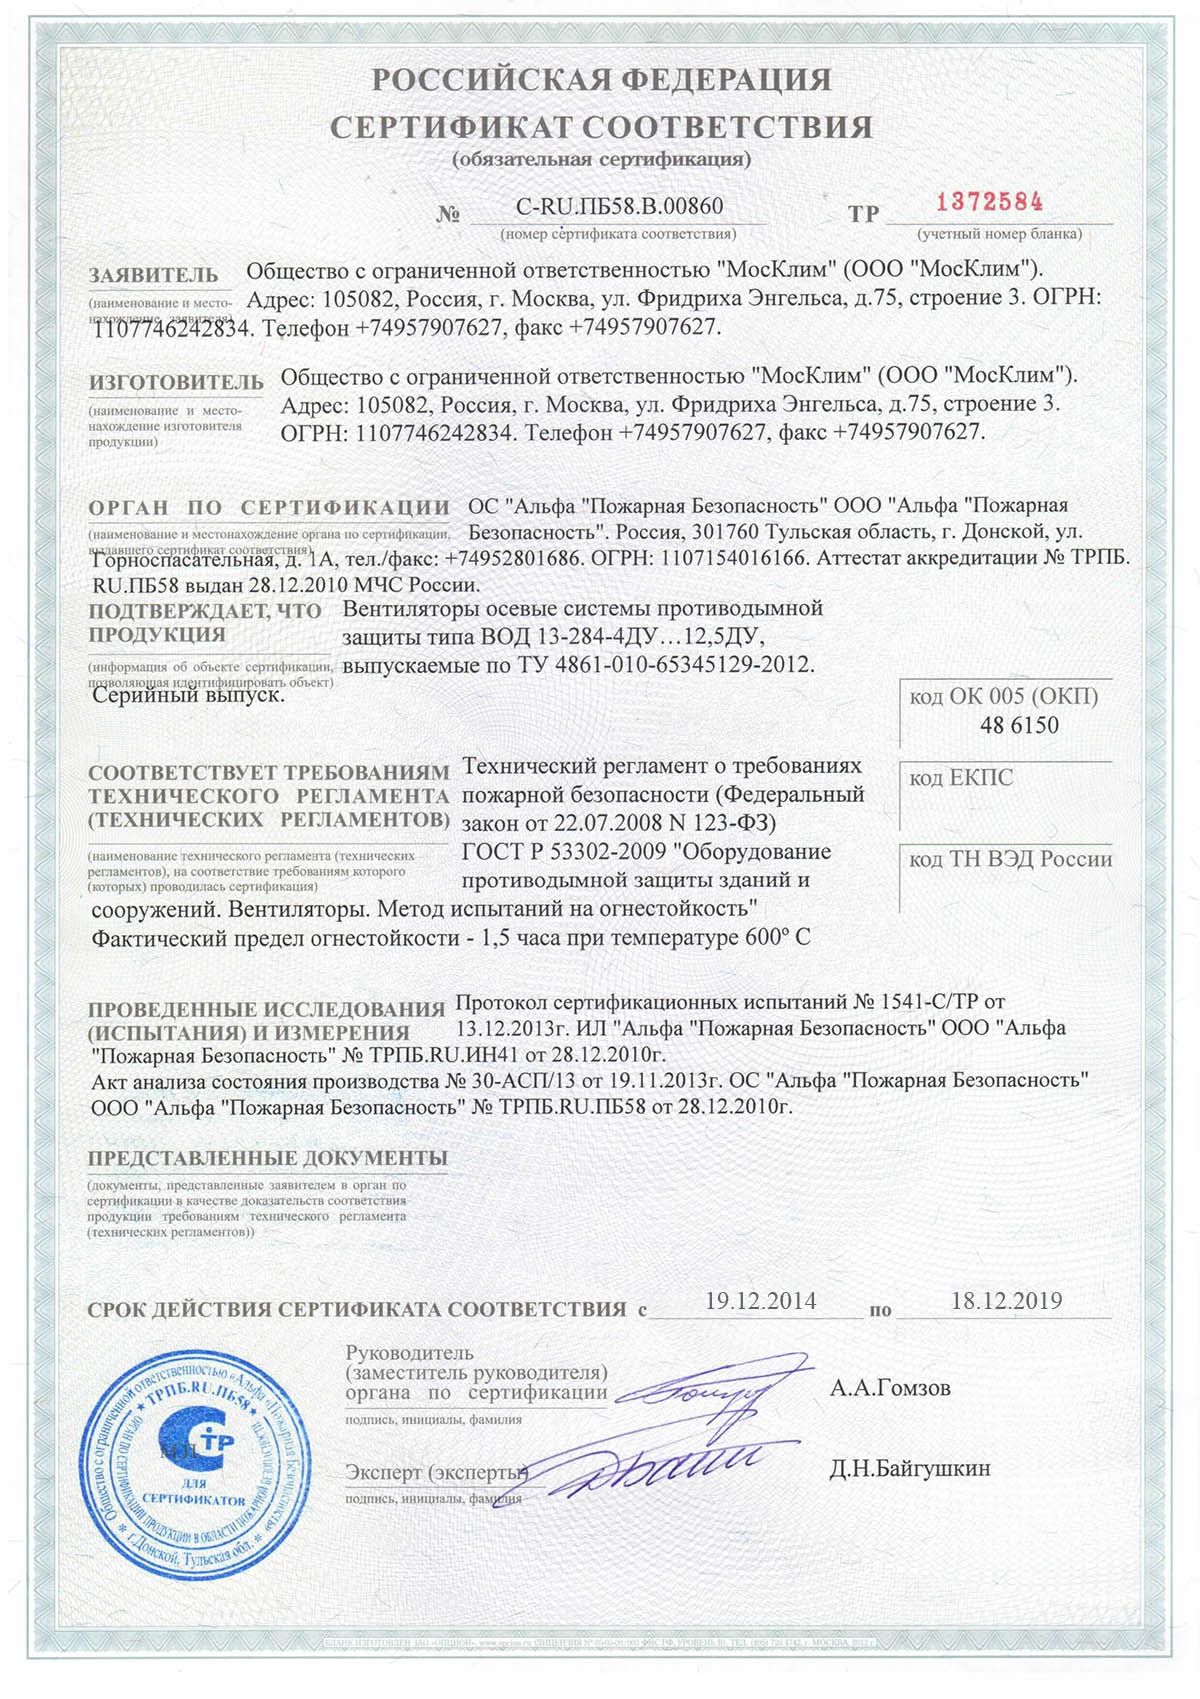 Сертификат соответствия ВОД 13-284-Ду № С-RU.ПБ58.В00860 от 19.12.2014